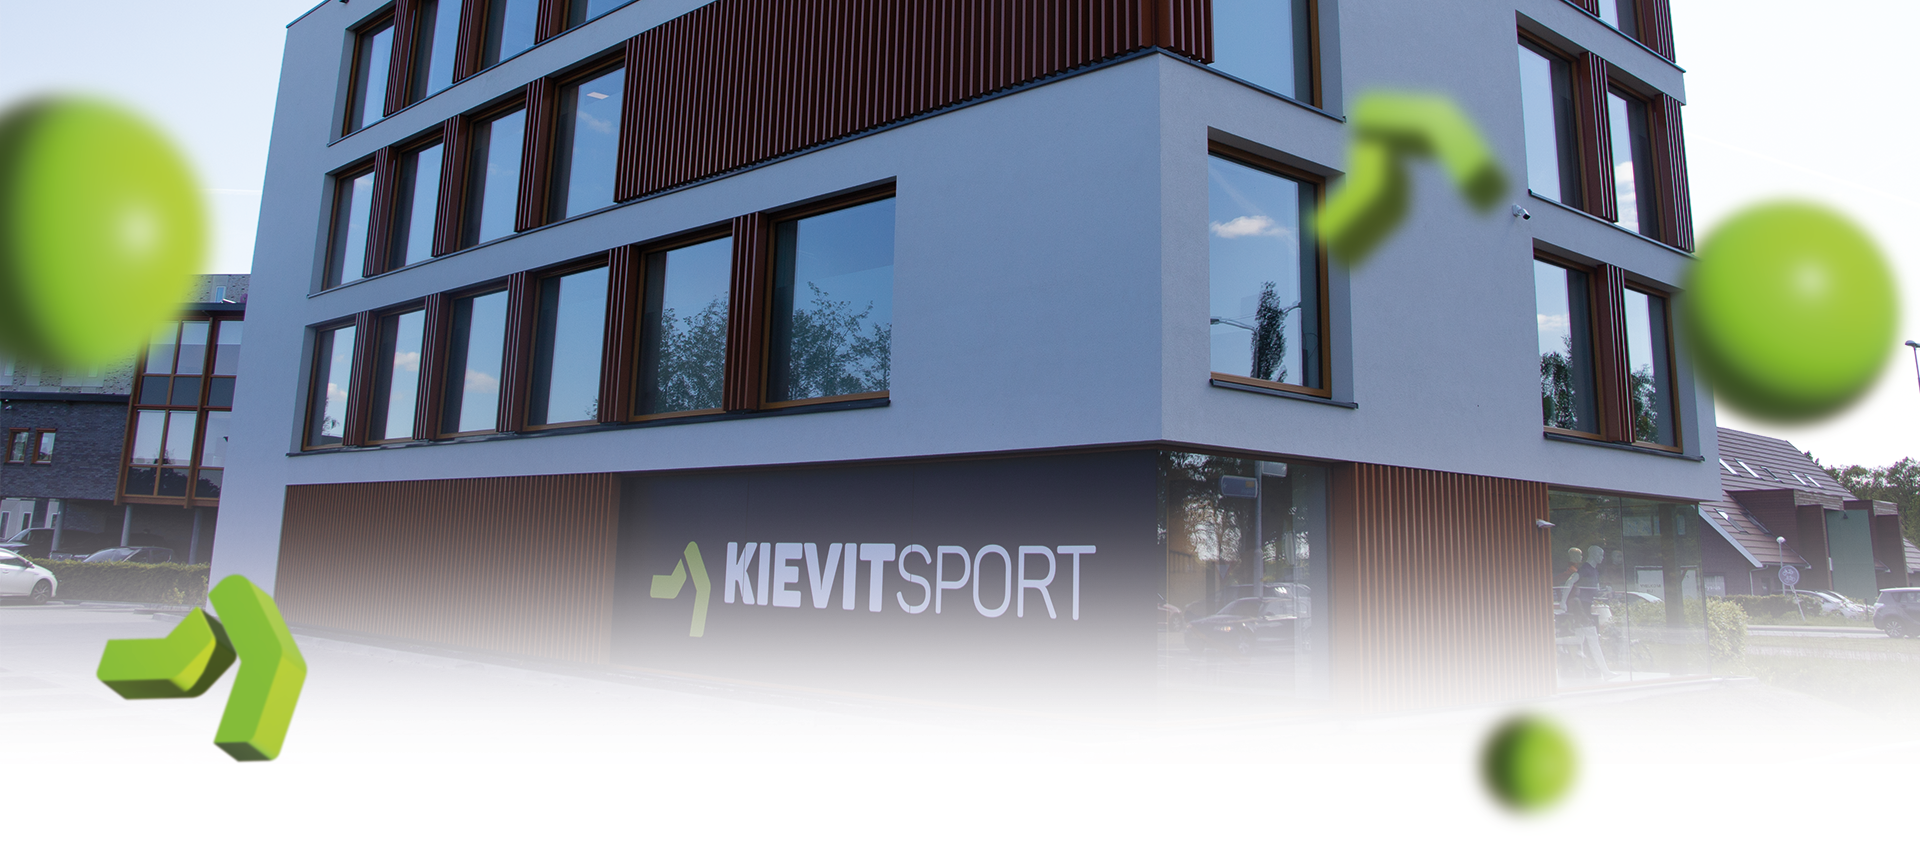 Contact met Kievit Sport